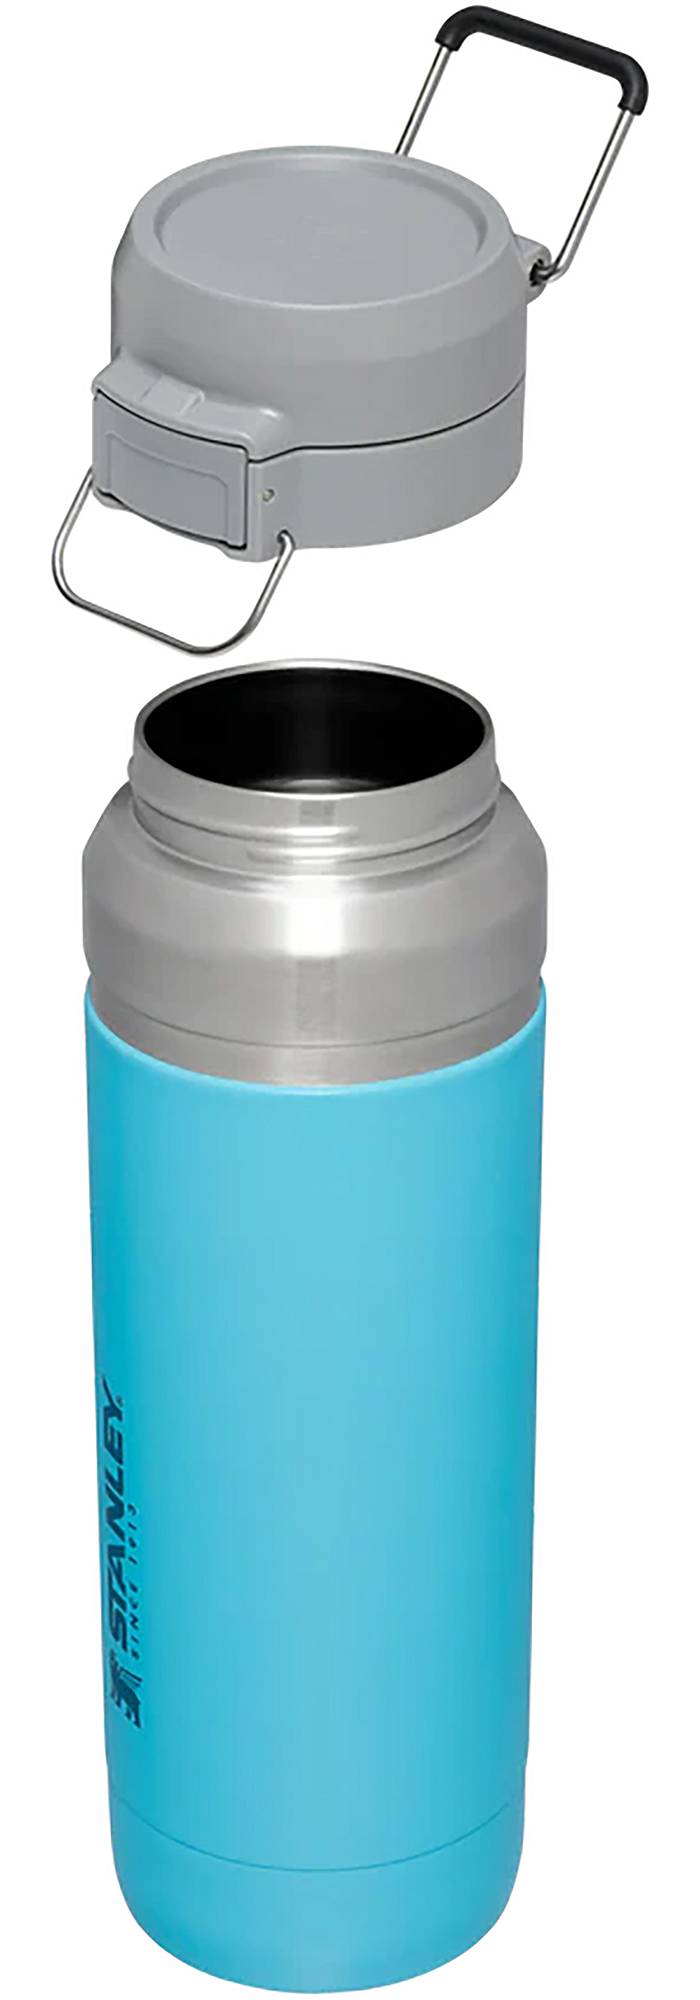 Stanley Quick-Flip Water Bottle, Buy online